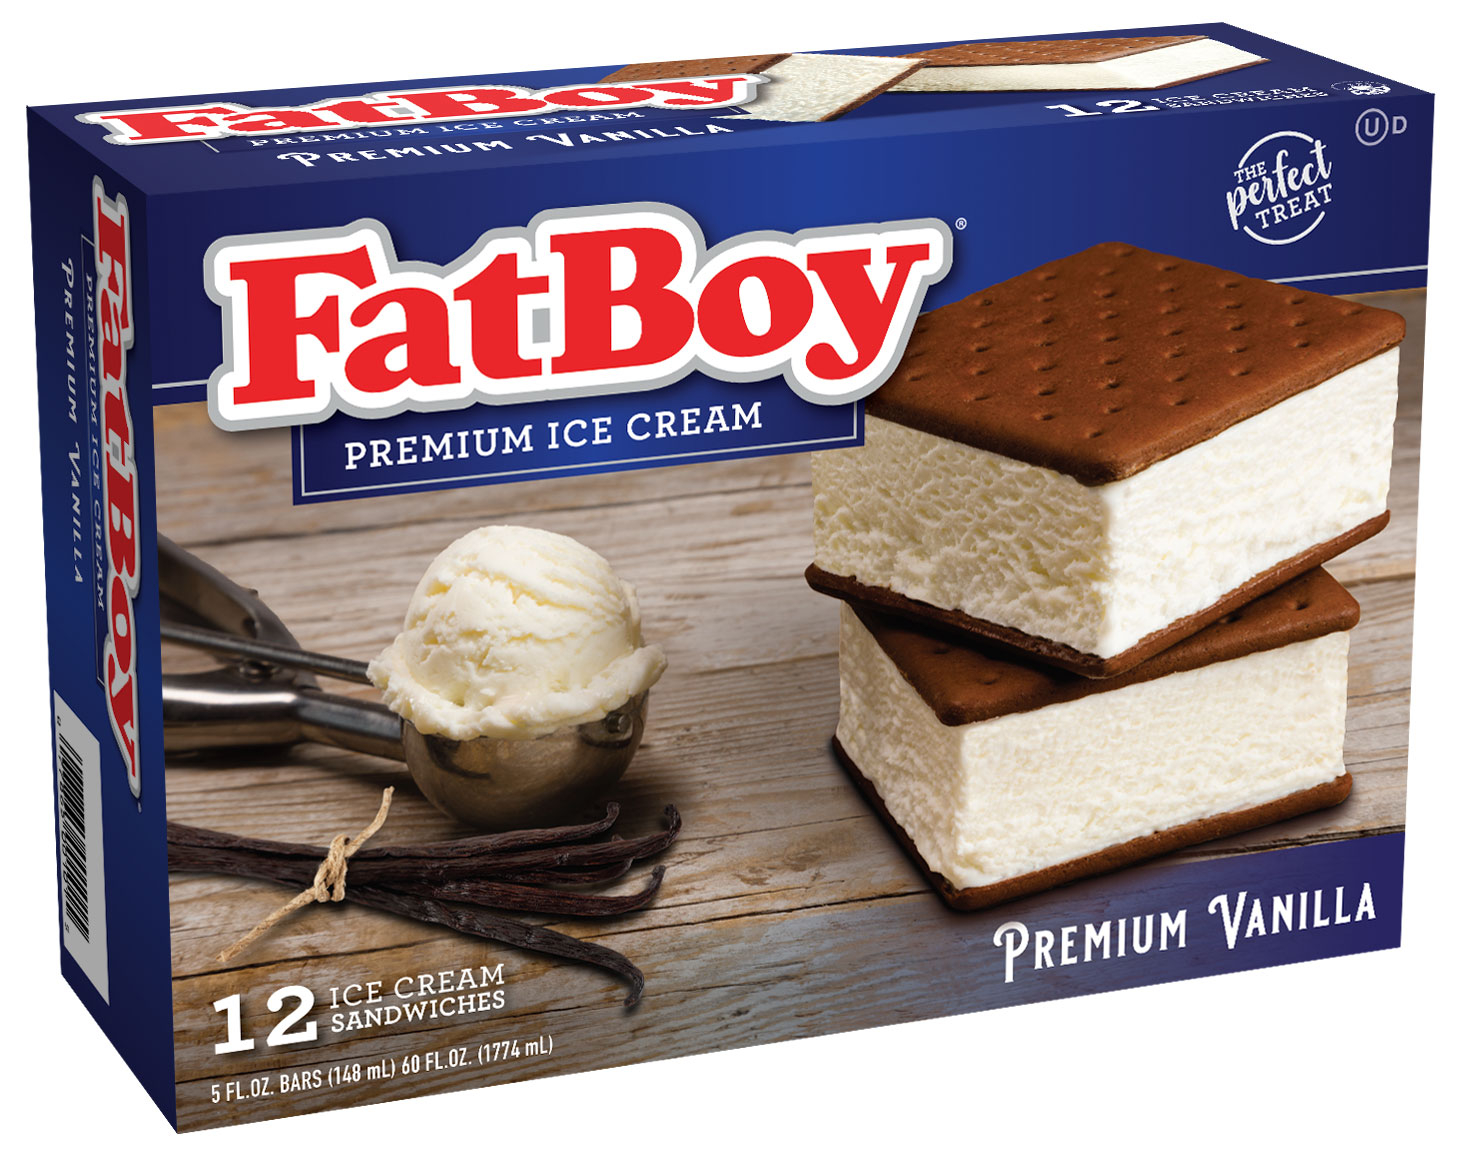 FatBoyVanilla Ice Cream Sandwich 12 count